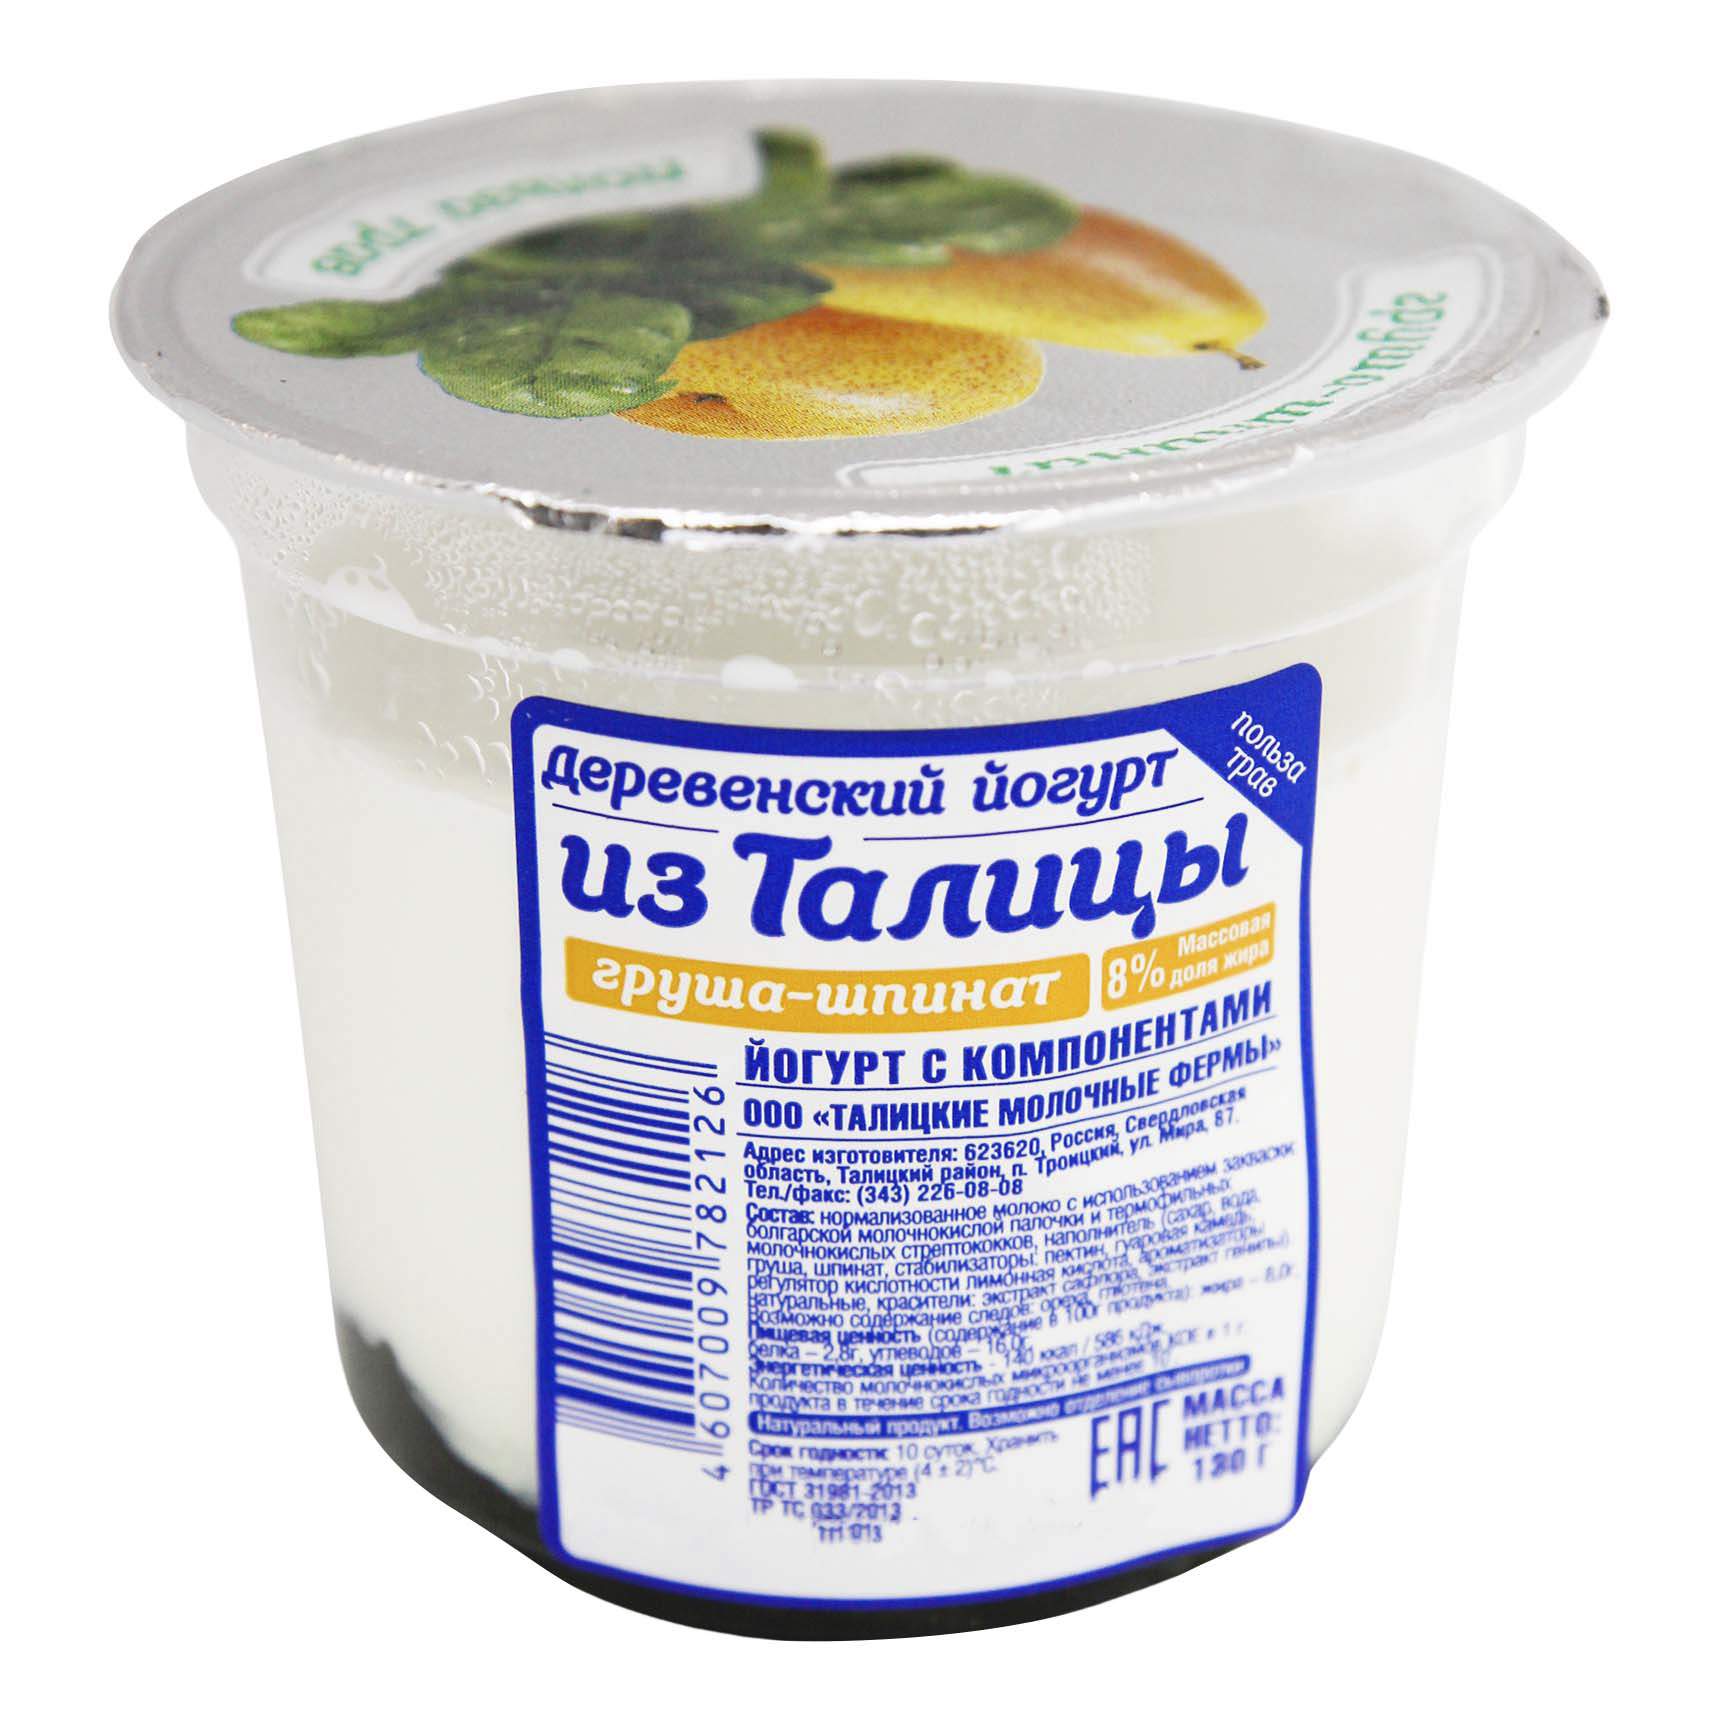 Йогурт Из Талицы груша-шпинат 8% 130 г